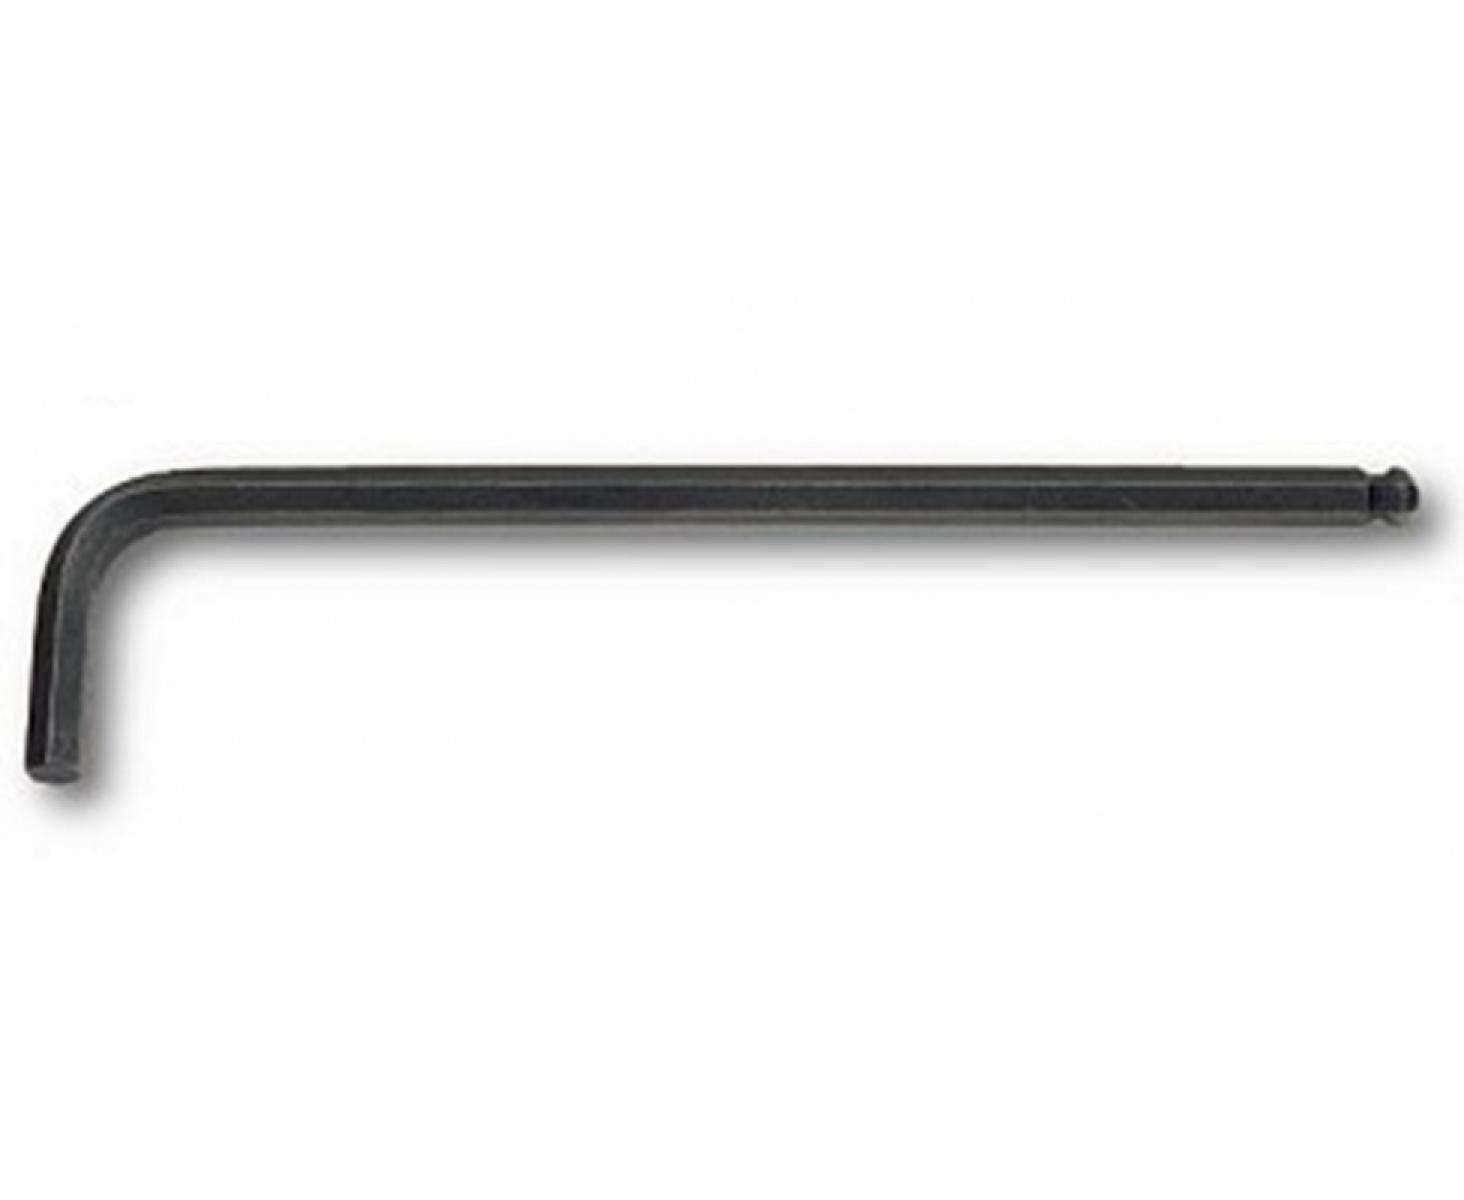 Шестигранный штифтовый ключ USAG 280 LTS 280061 2,5 x 85 длинный со сферической головкой